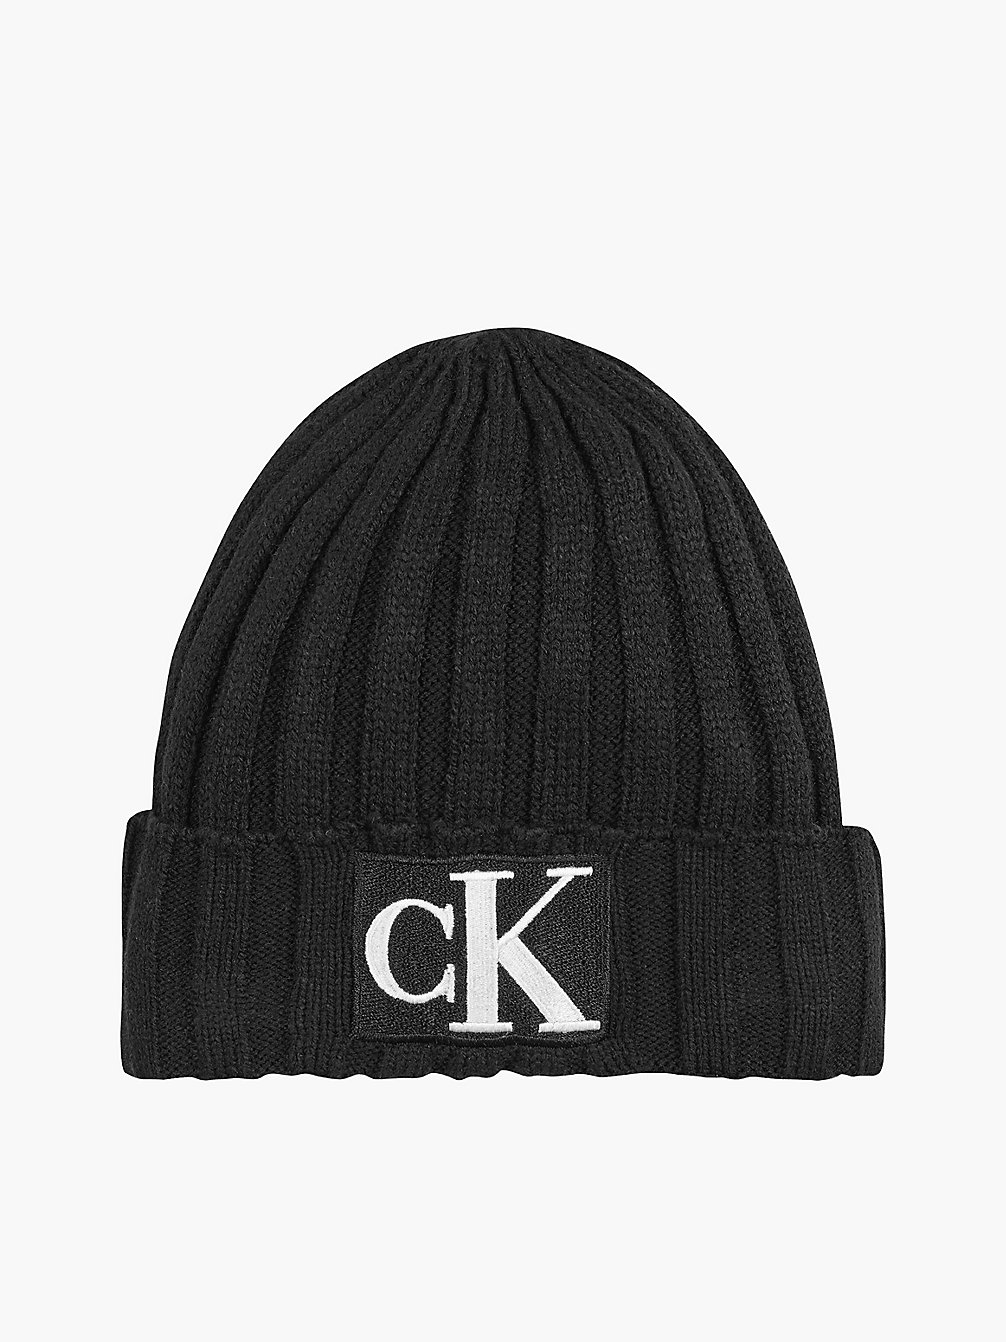 CK BLACK > Вязаная репсовая шапка унисекс > undefined kids unisex - Calvin Klein